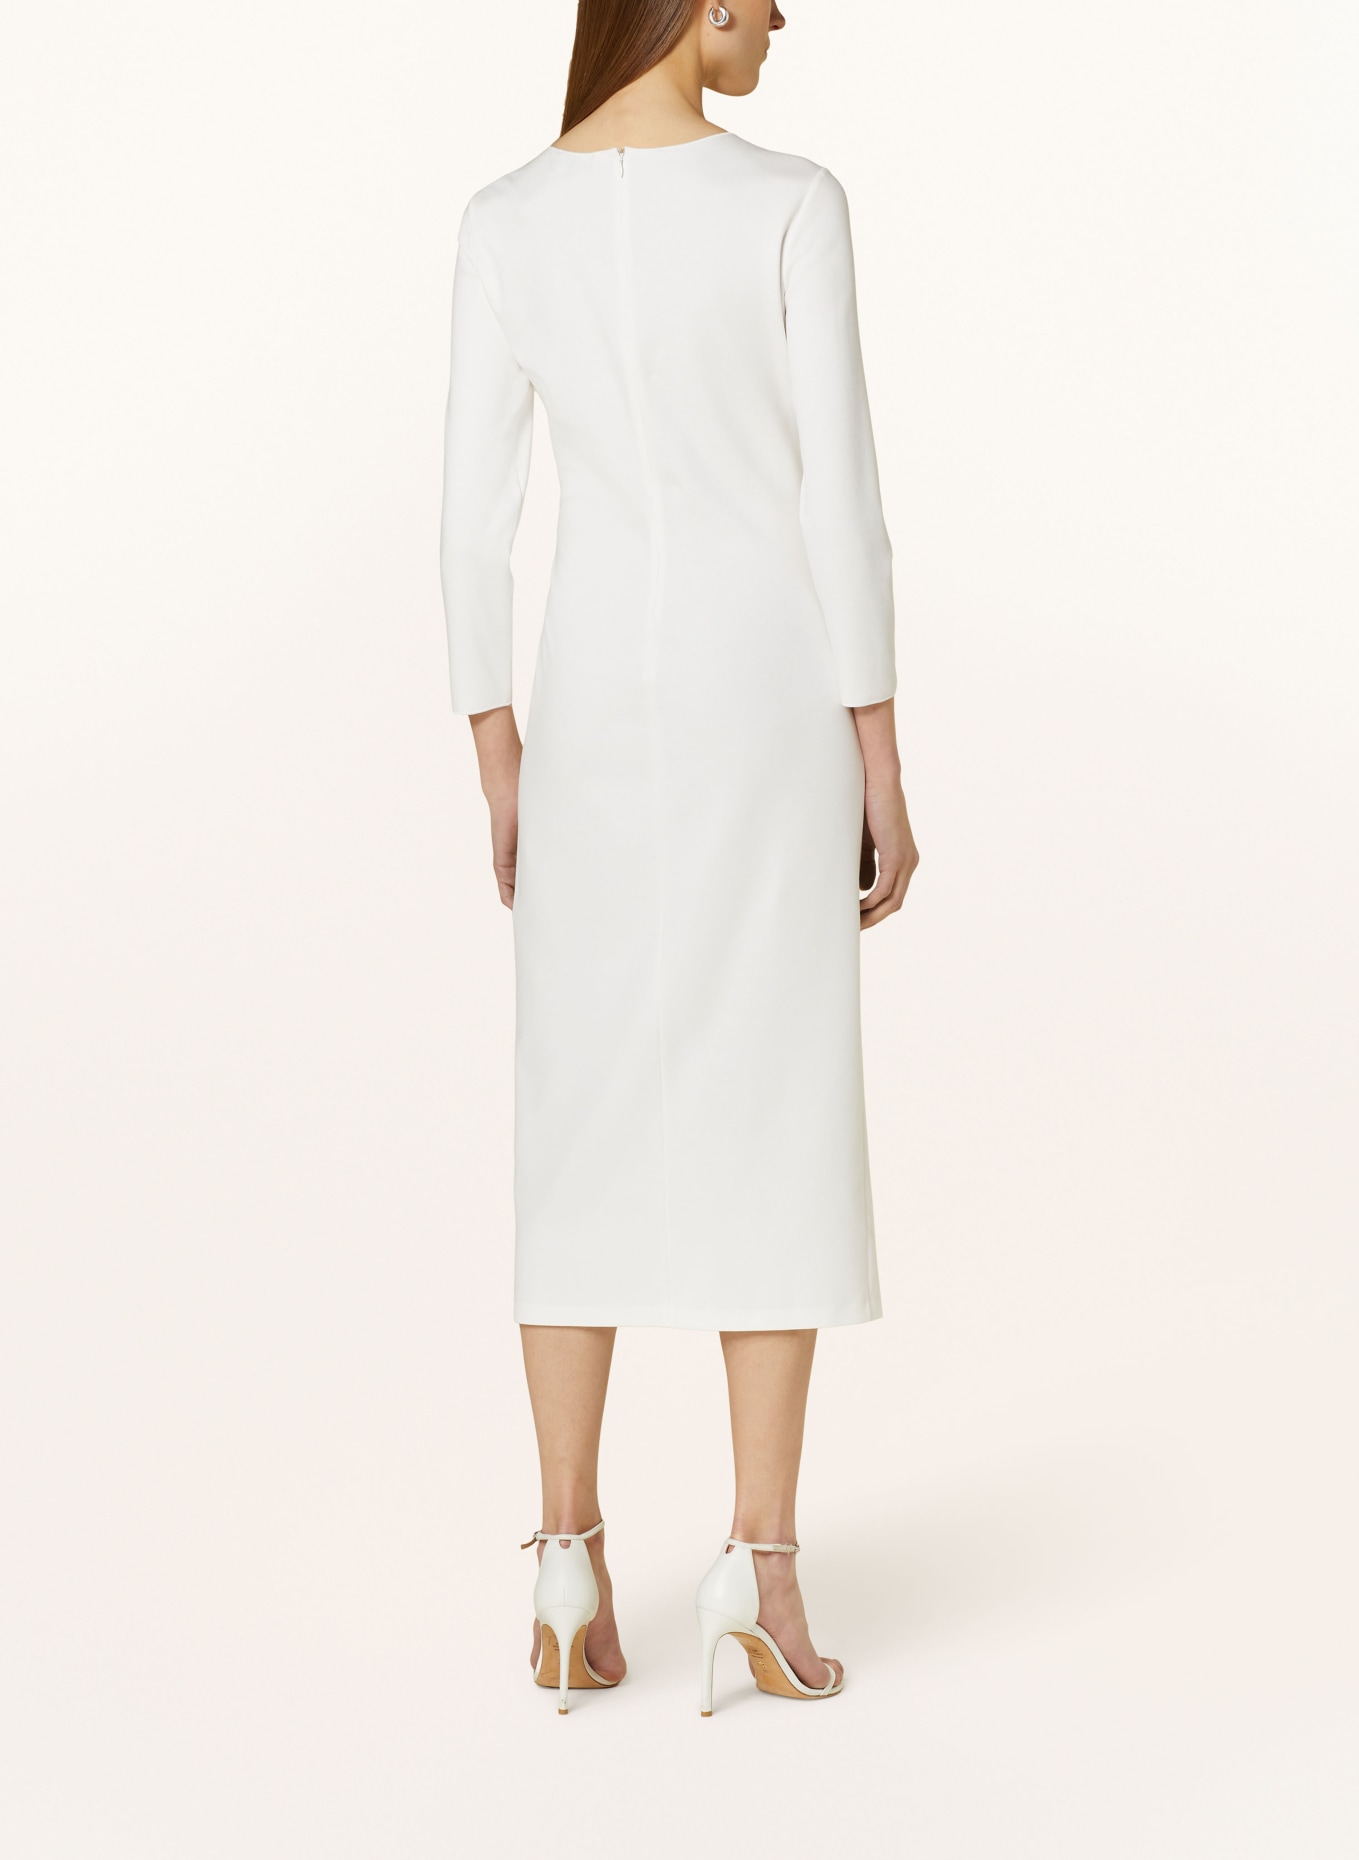 EMPORIO ARMANI Sheath dress in jersey, Color: WHITE (Image 3)